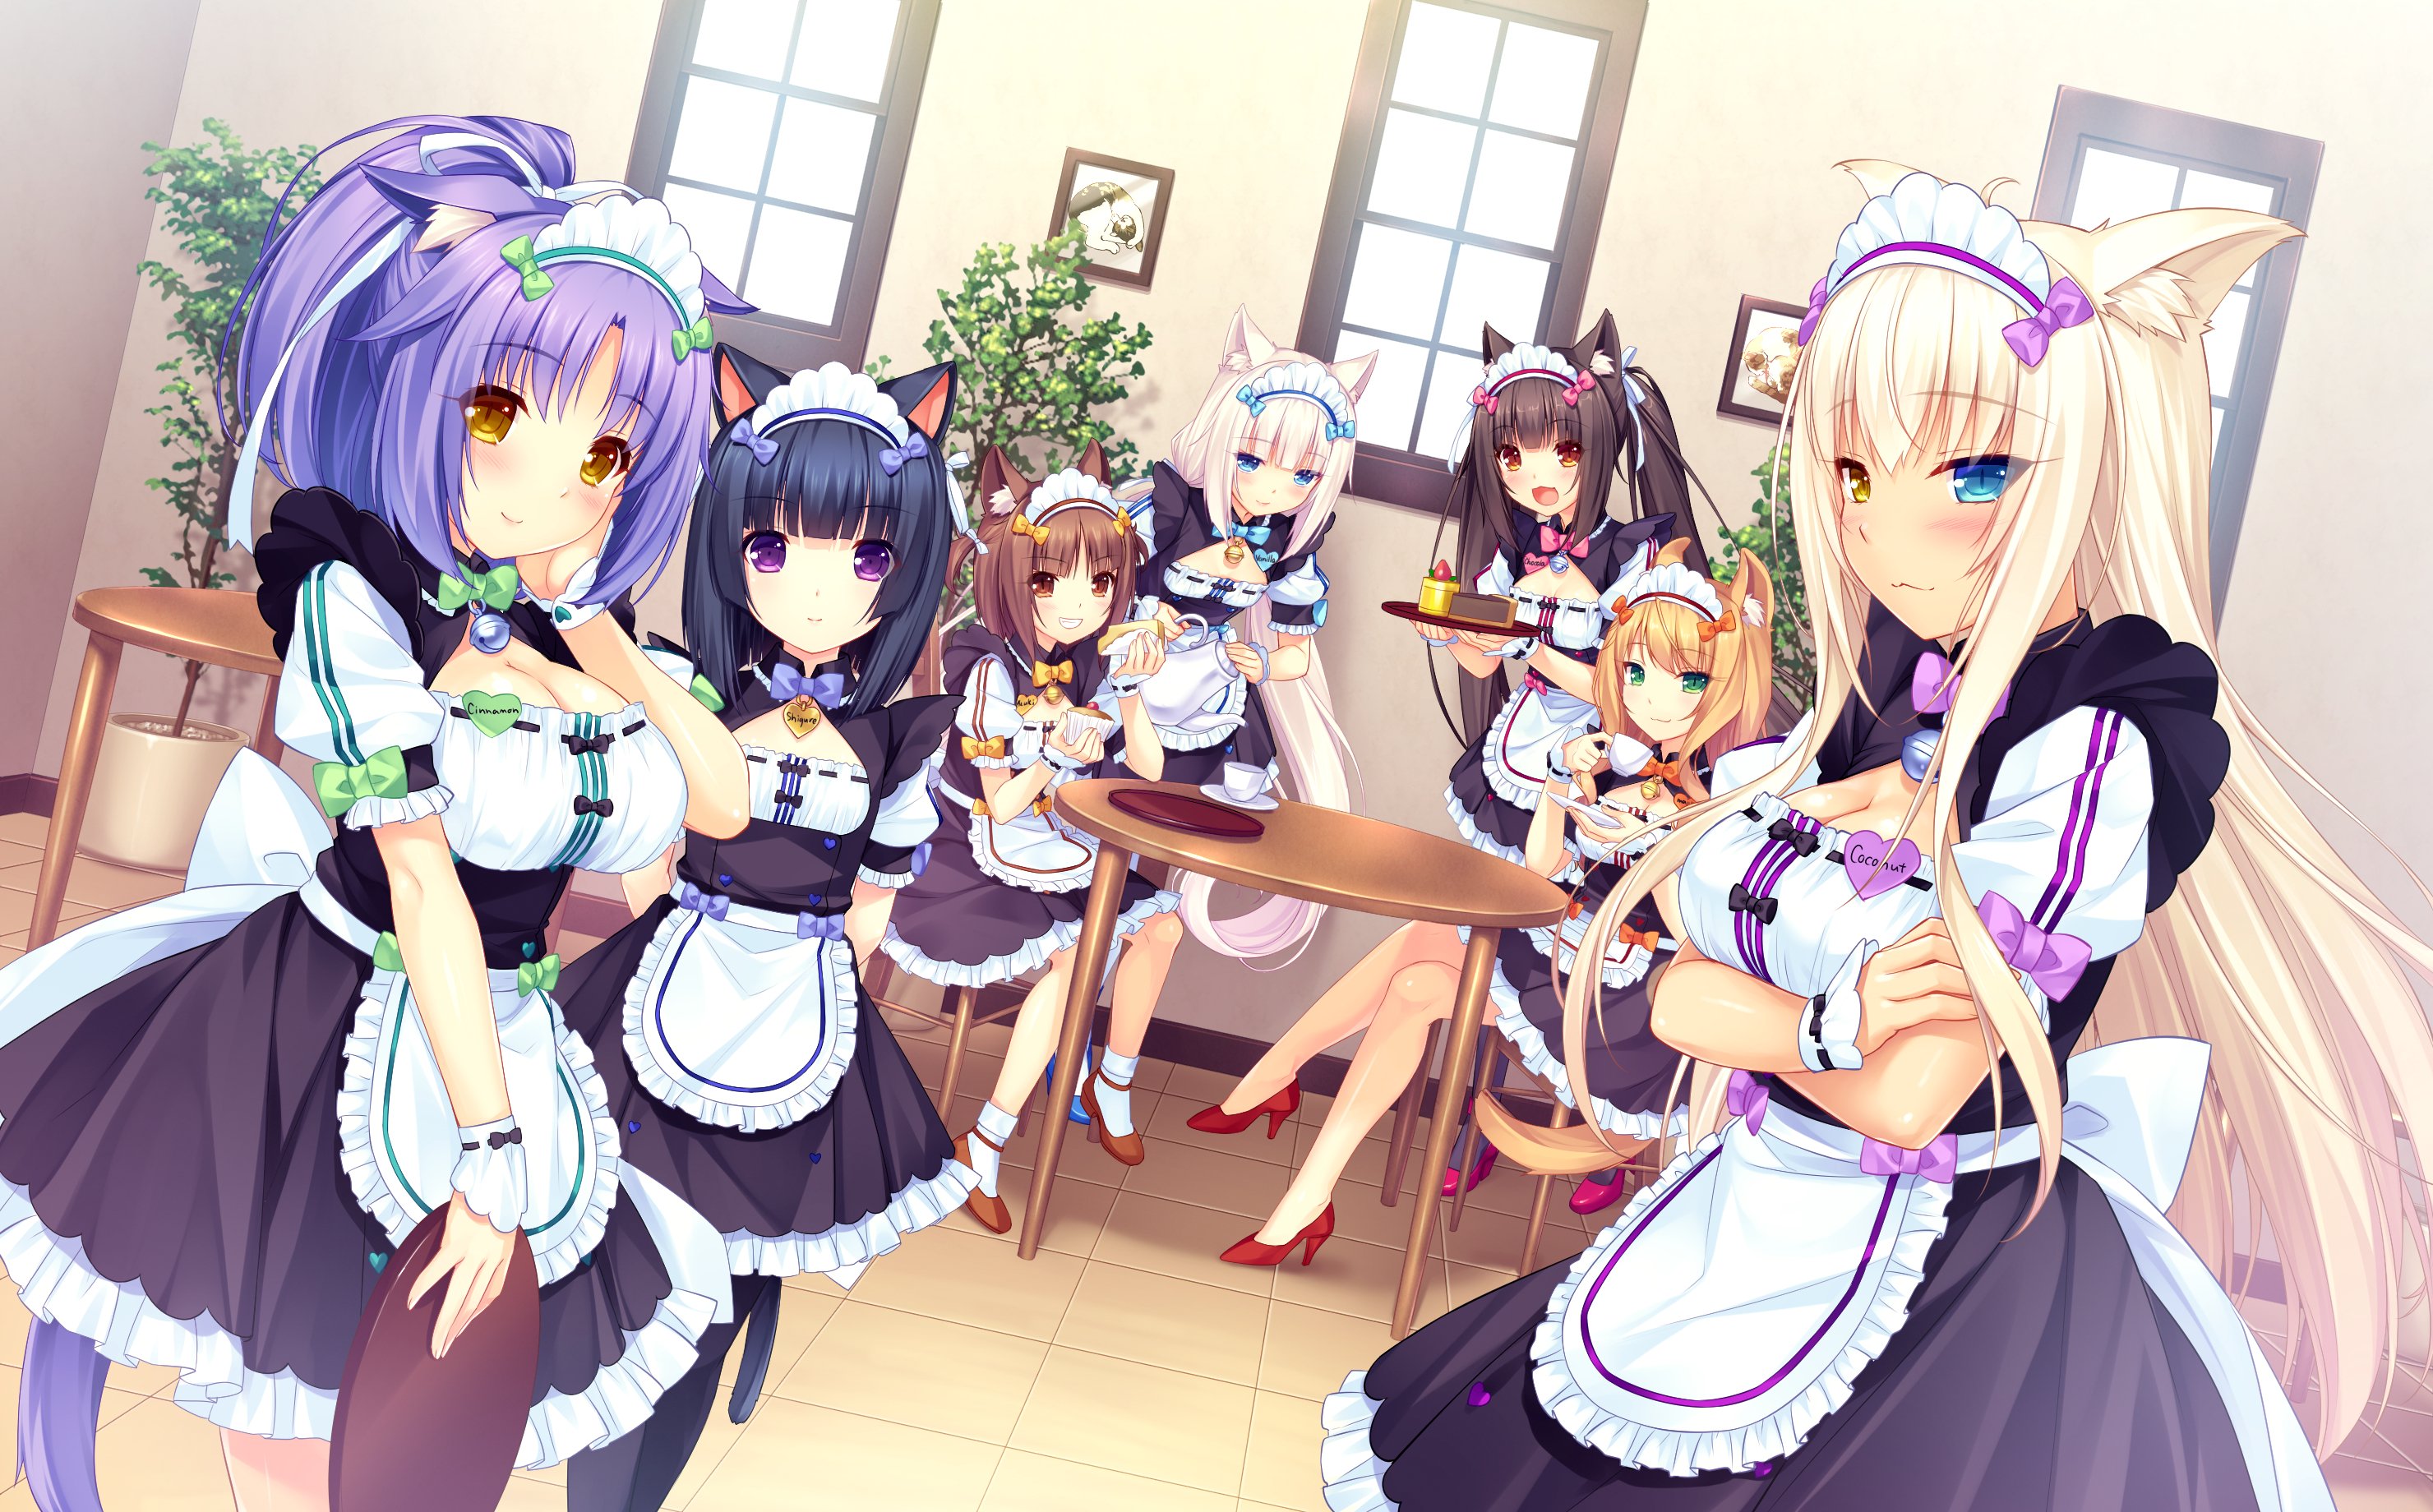 maids, Girls, Dress, Anime, Cute Wallpaper